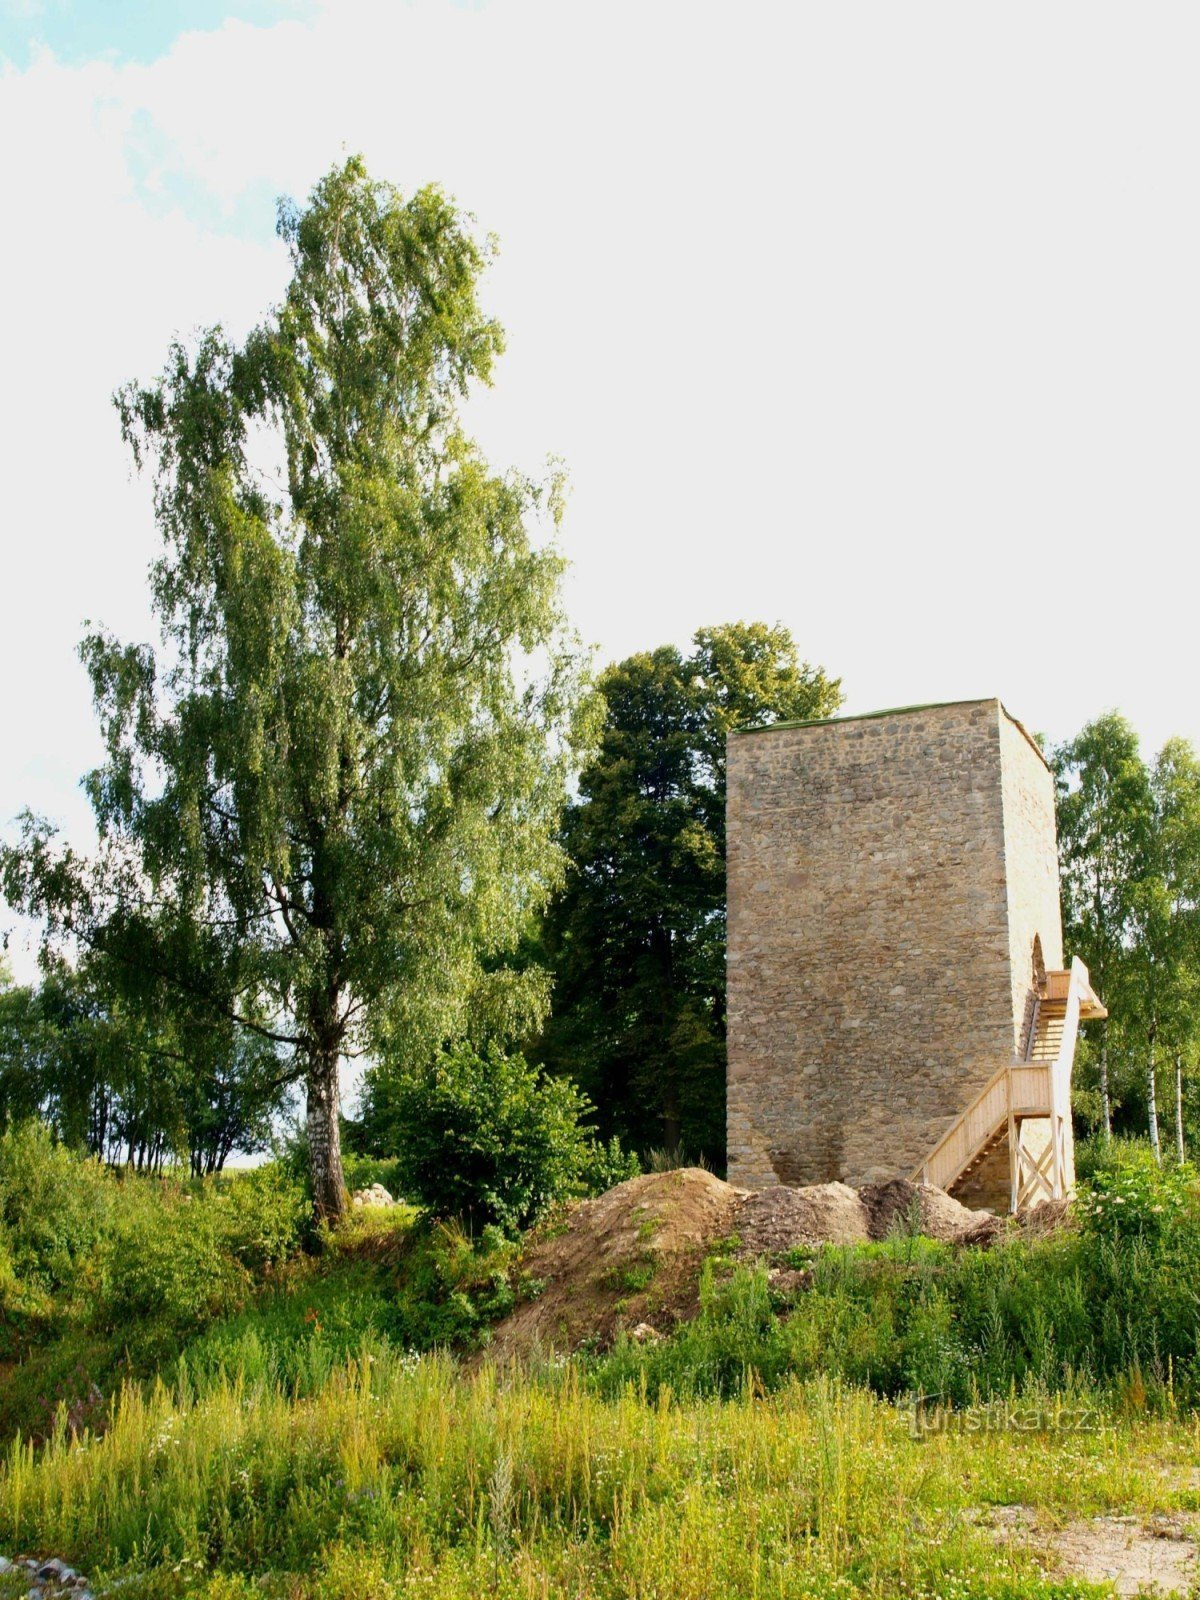 Snimak rekonstruirane tvrđavske kule s ribnjaka